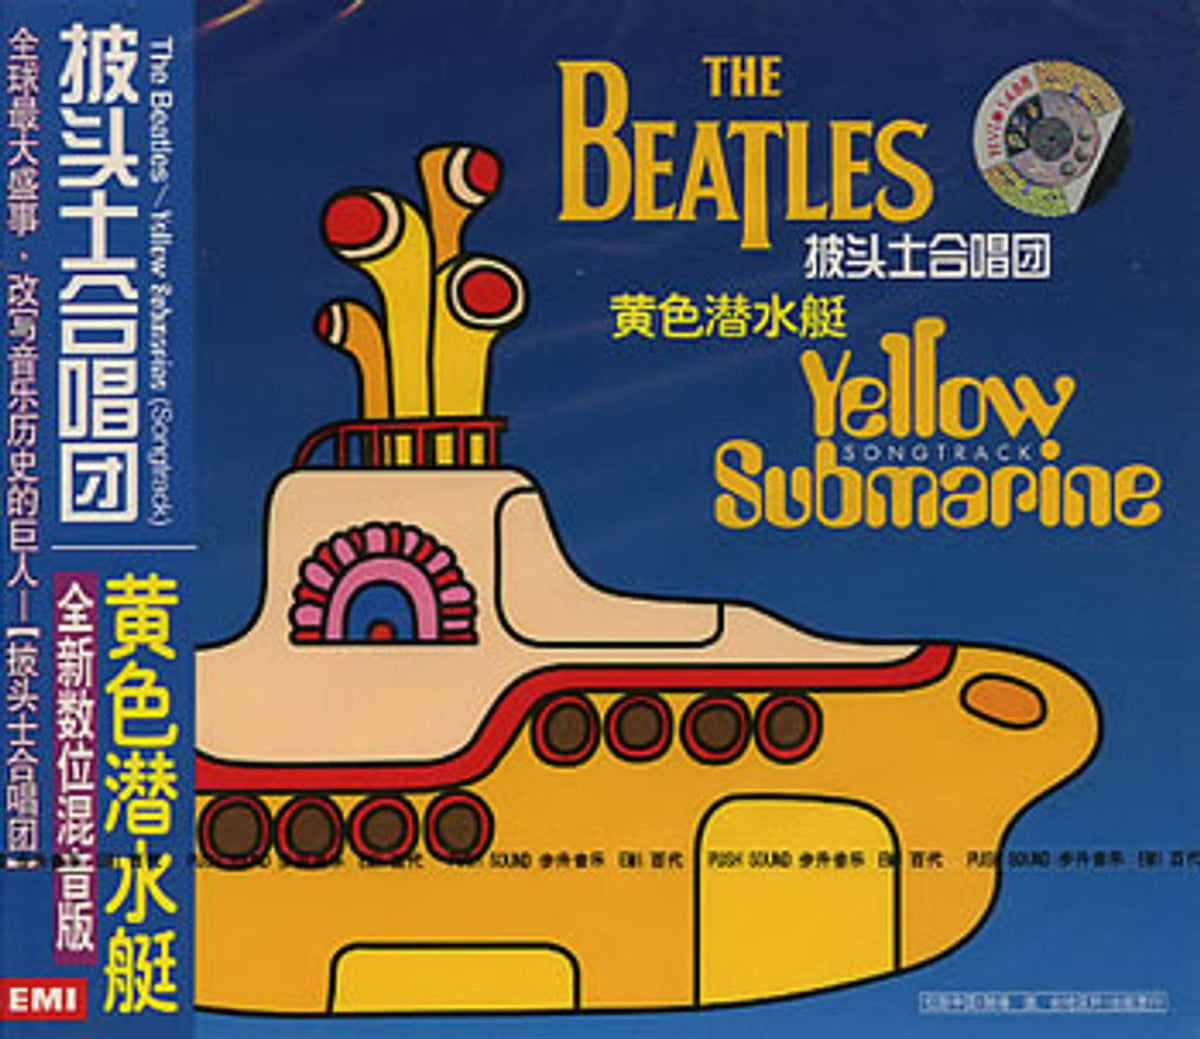 The Beatles Yellow Submarine Songtrack Chinese CD album 